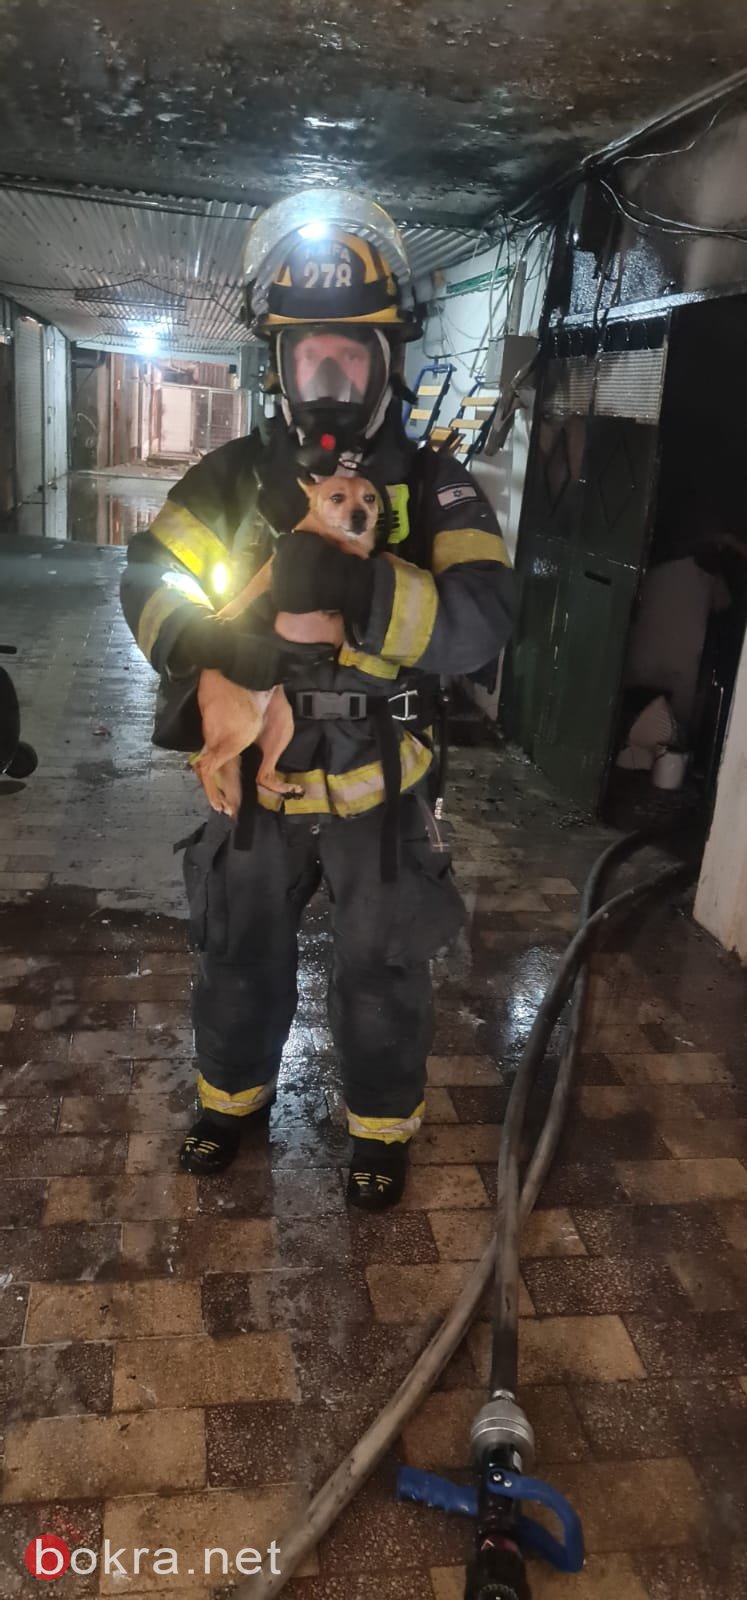 حيفا: اندلاع حريق داخل مبنى، وتخليص أم وأطفالها الثلاثة-3